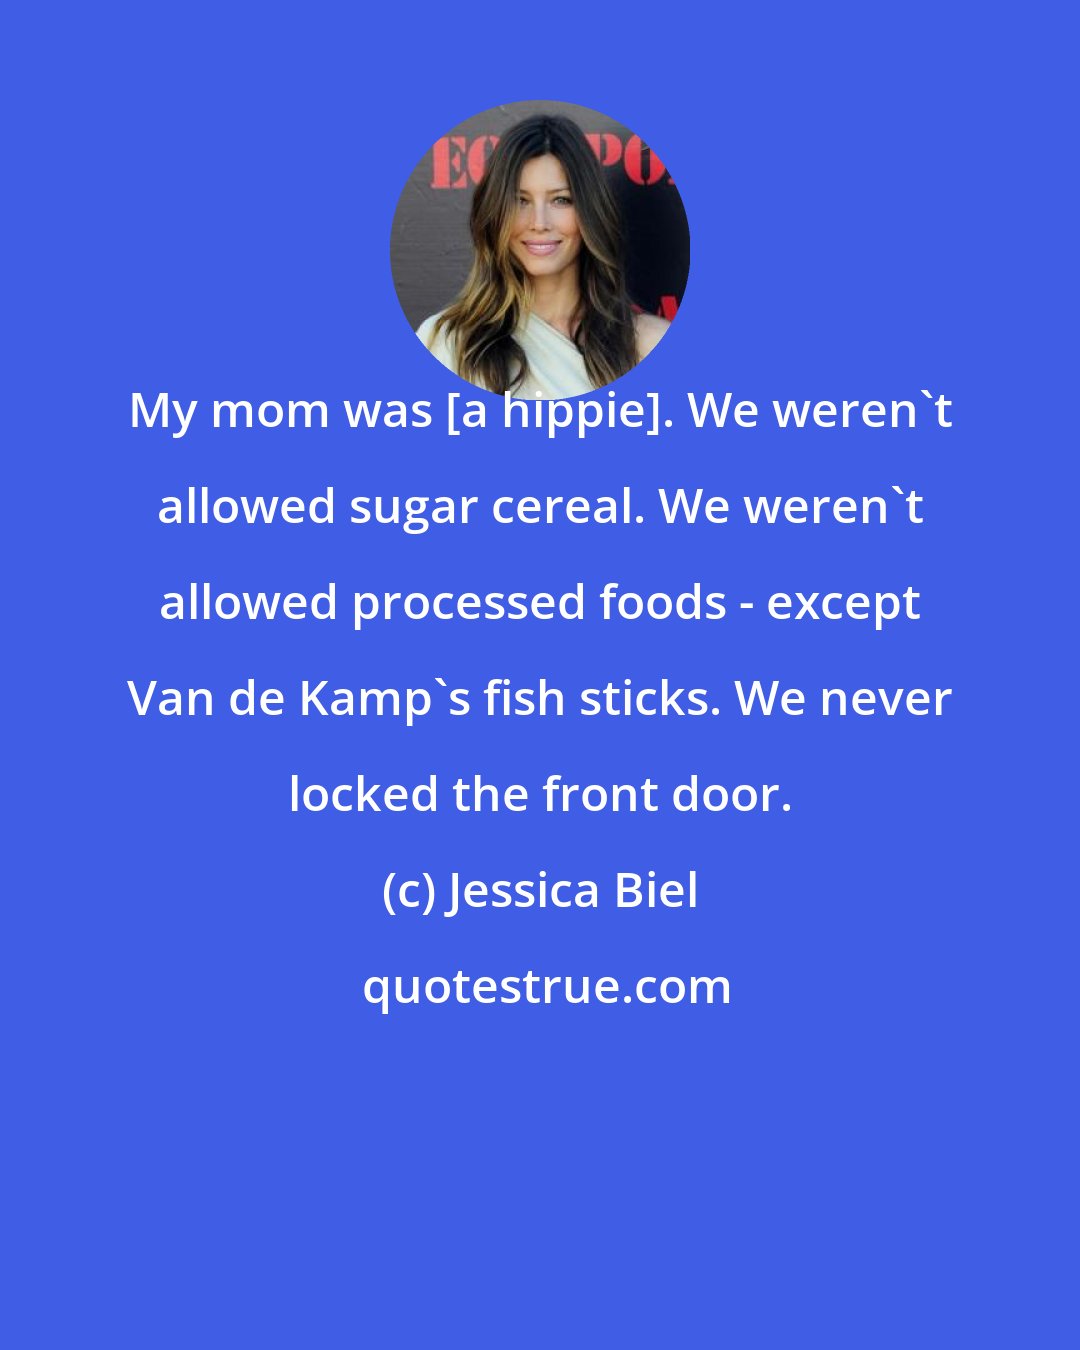 Jessica Biel: My mom was [a hippie]. We weren't allowed sugar cereal. We weren't allowed processed foods - except Van de Kamp's fish sticks. We never locked the front door.